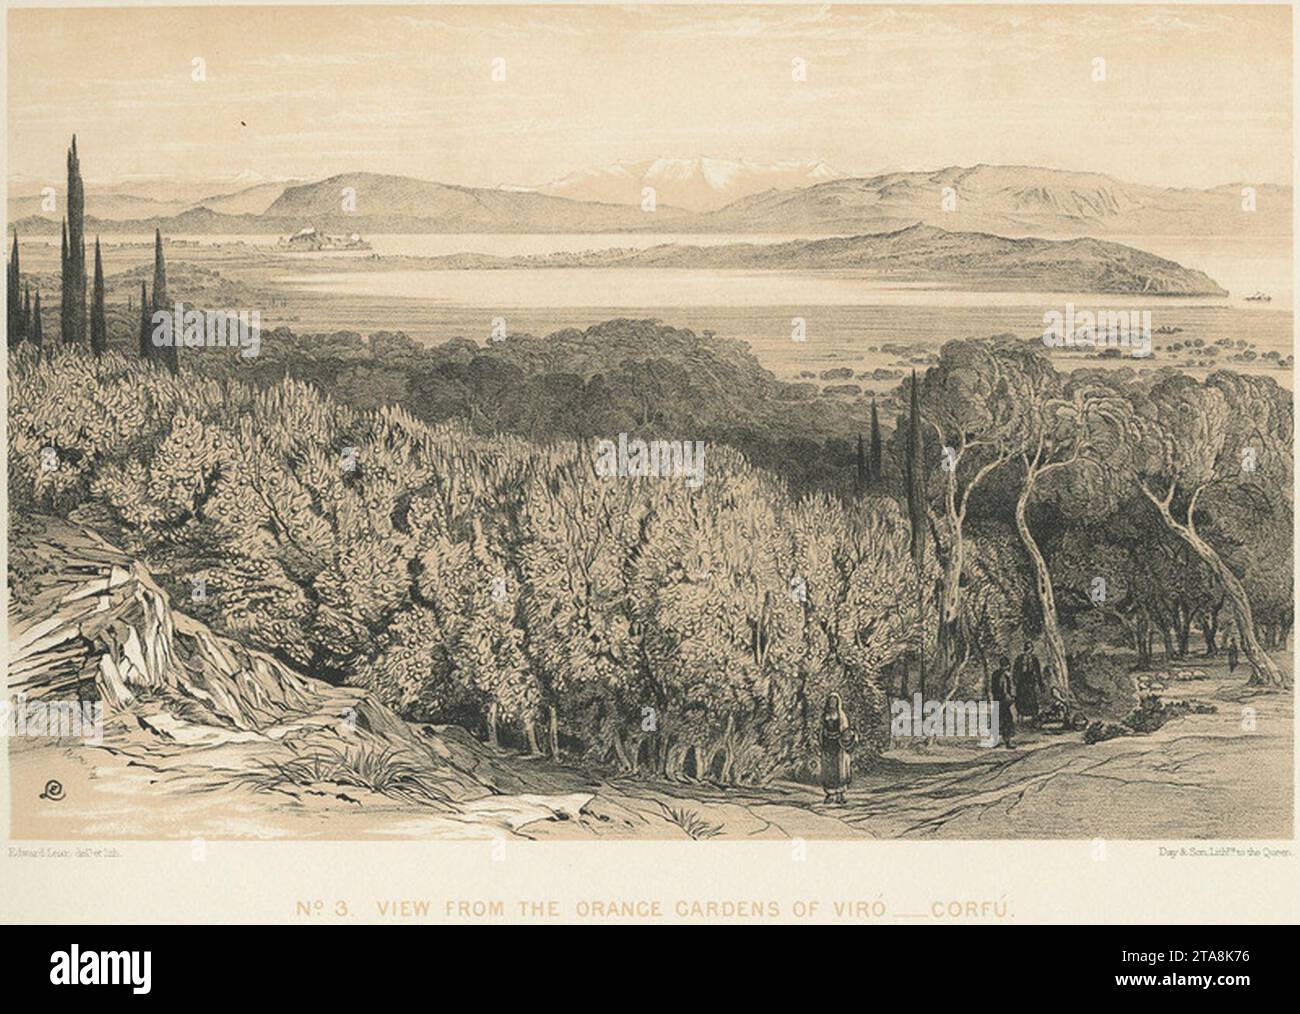 Blick von den Orangen Gärten von Viró - Corfú - Lear Edward - 1863. Stockfoto